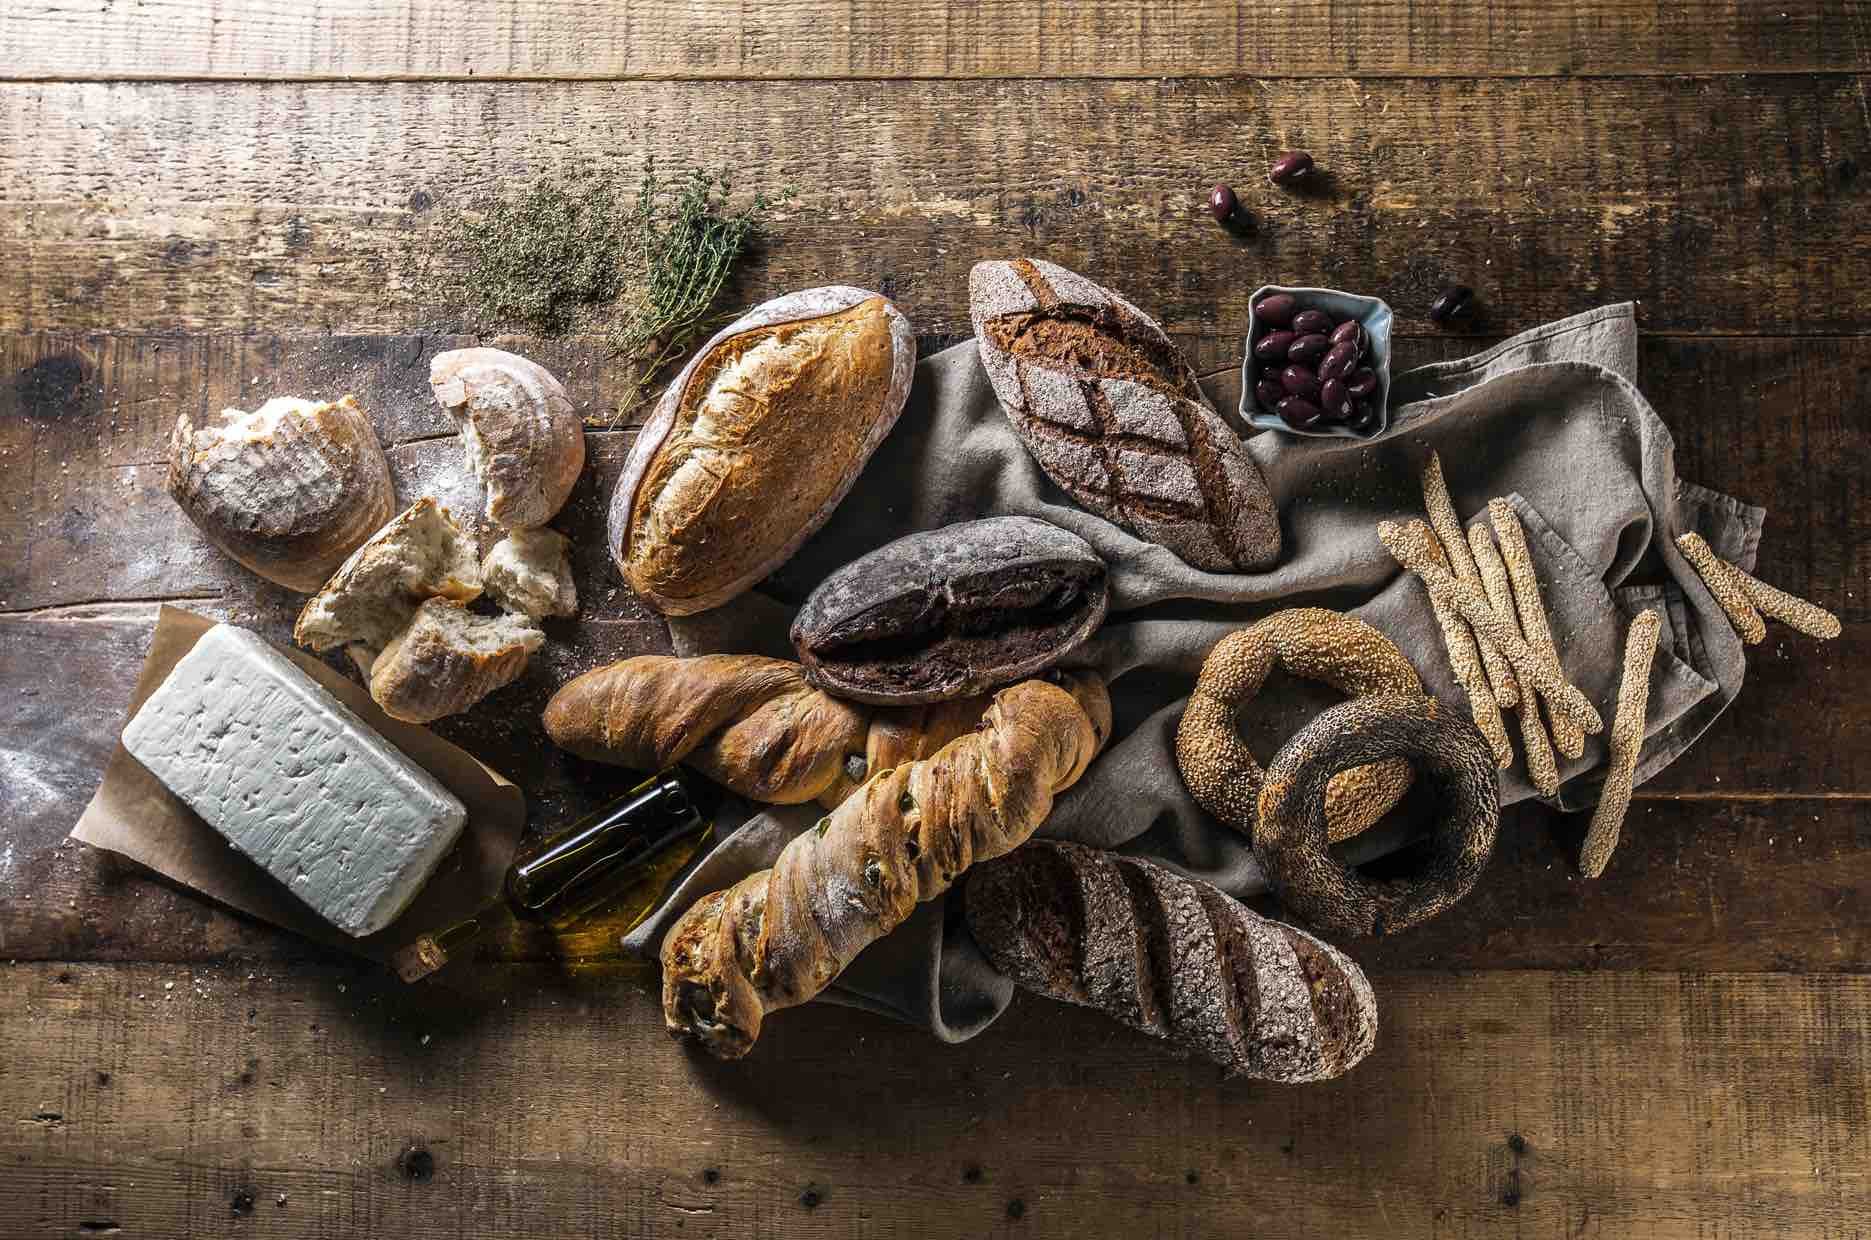 Картинки пекарня хлеб